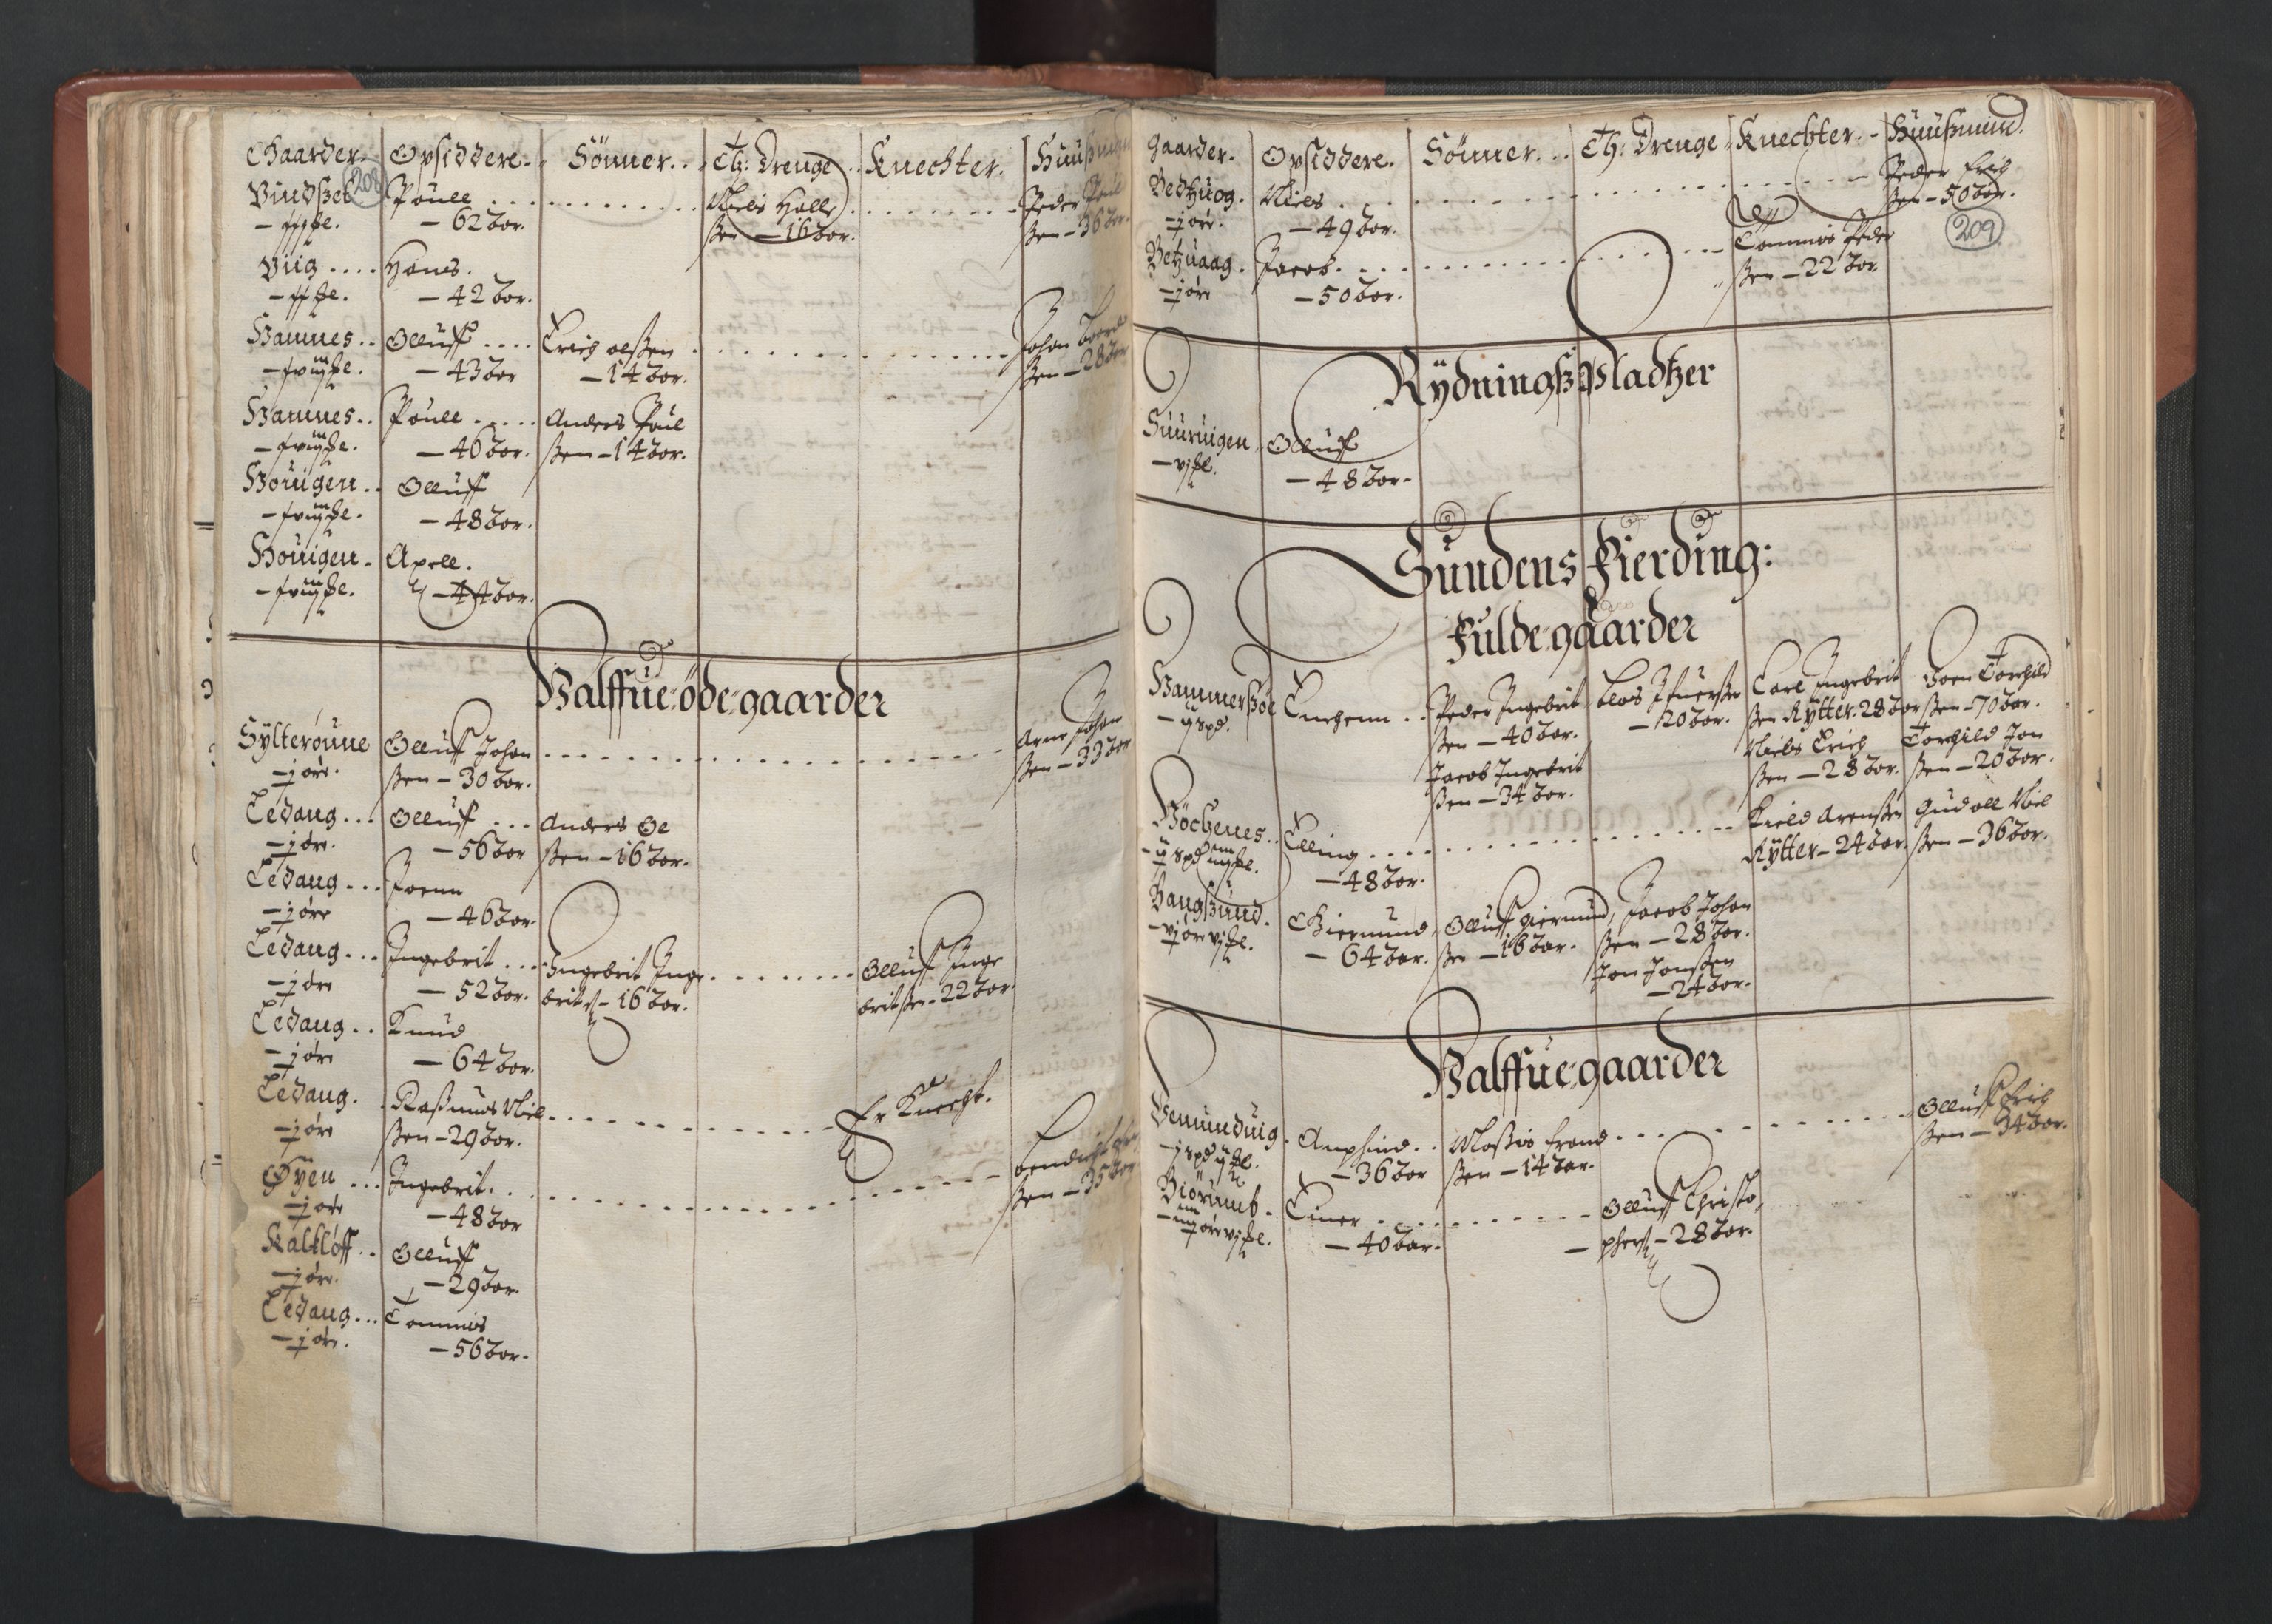 RA, Fogdenes og sorenskrivernes manntall 1664-1666, nr. 19: Fosen fogderi, Inderøy fogderi, Selbu fogderi, Namdal fogderi og Stjørdal fogderi, 1664-1665, s. 208-209